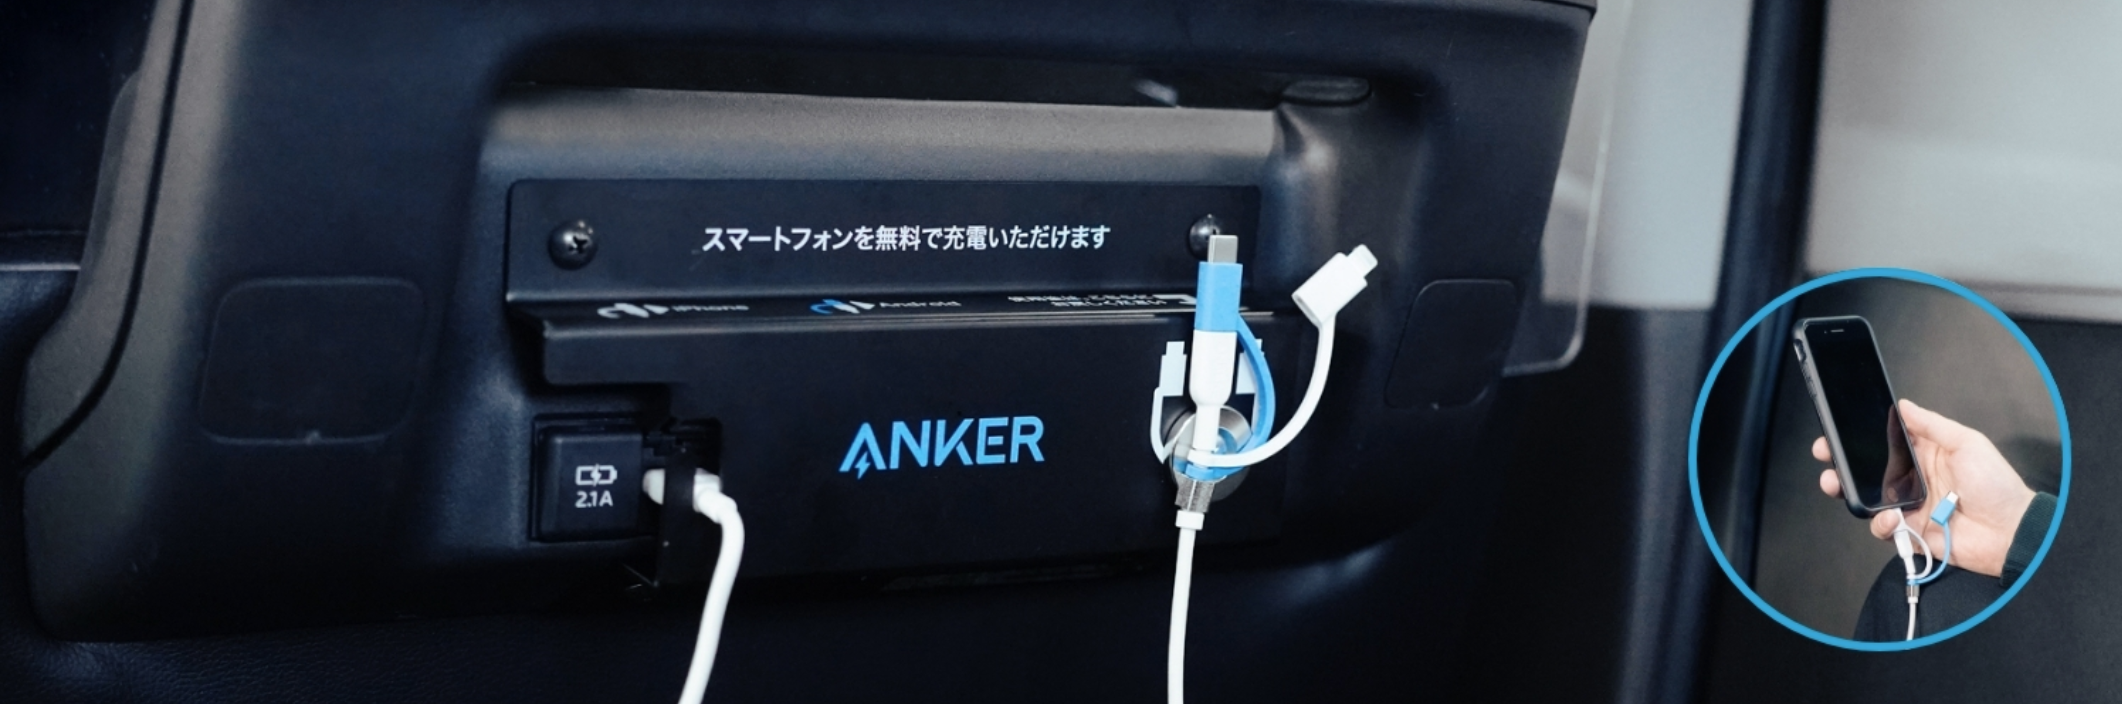 Eine Aufladestation von Anker in einem Minivan-Taxi in Tokio.